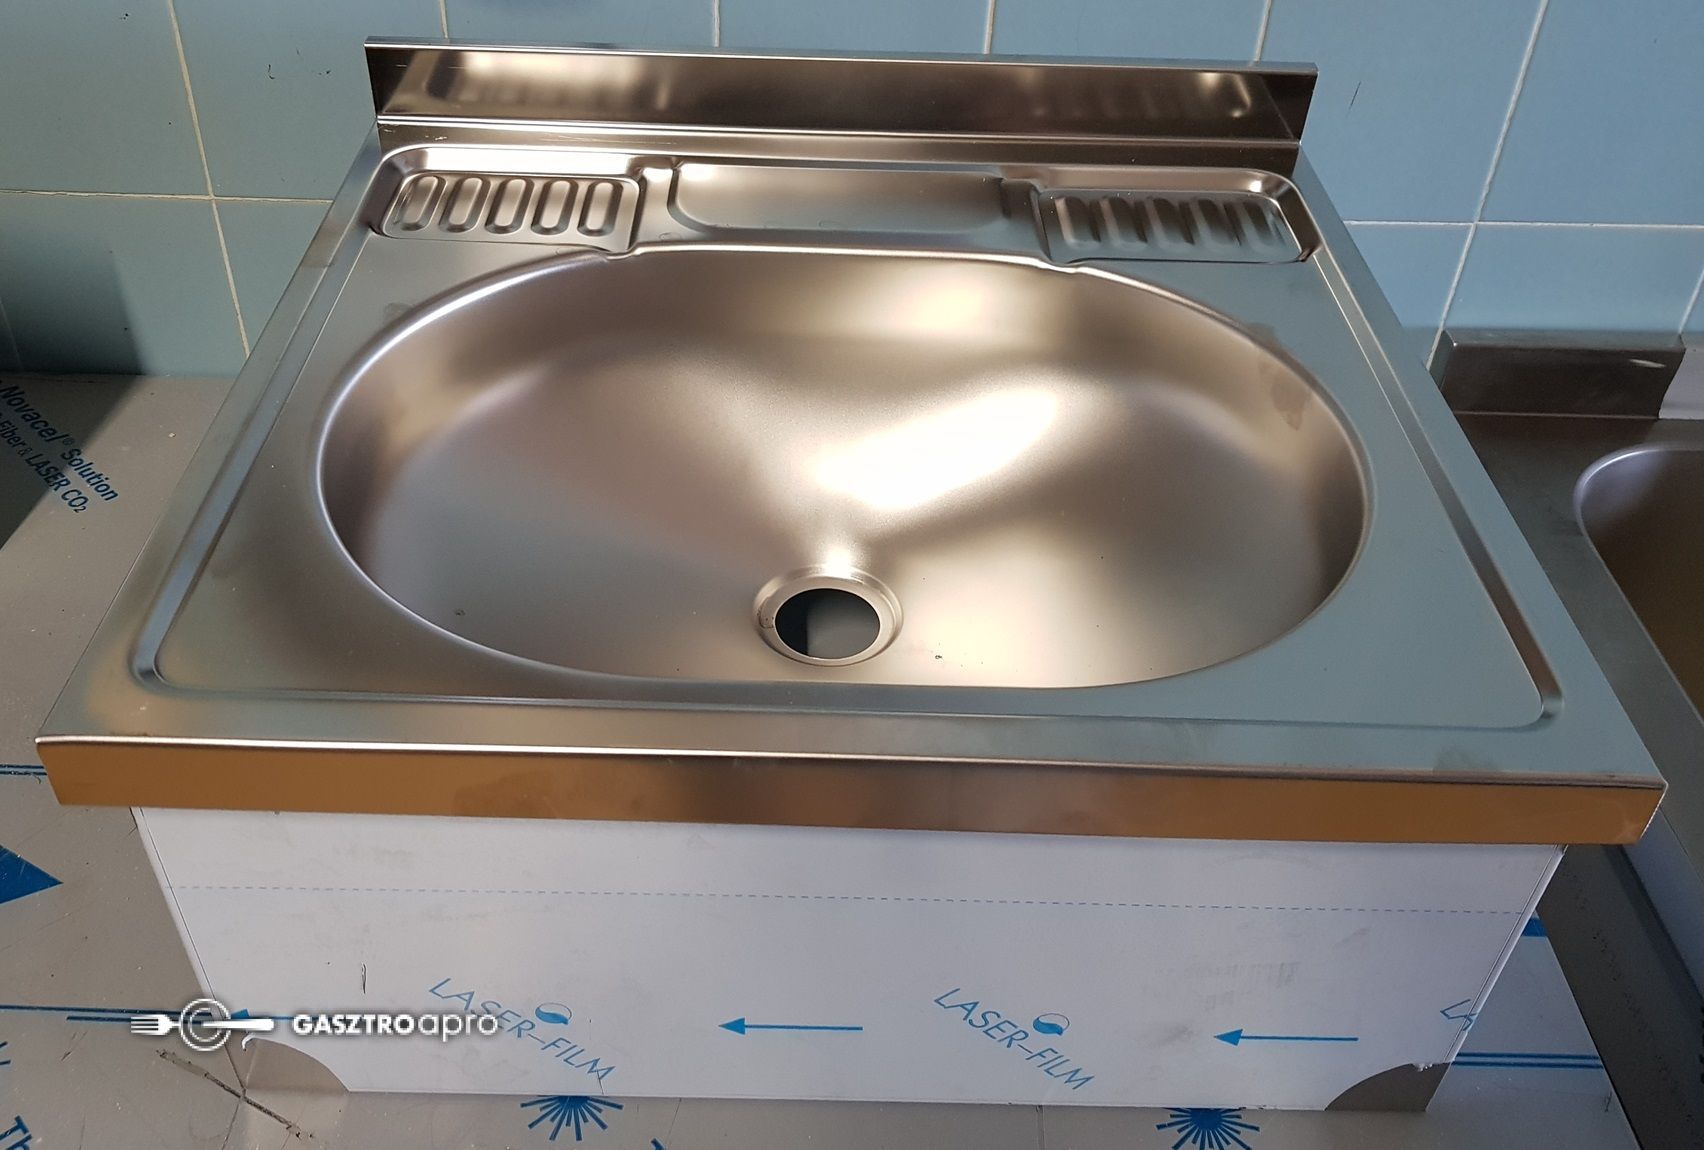 új inox fóliás ipari nagy konyhai kézmosó mosdó mosogató - Gasztroapró